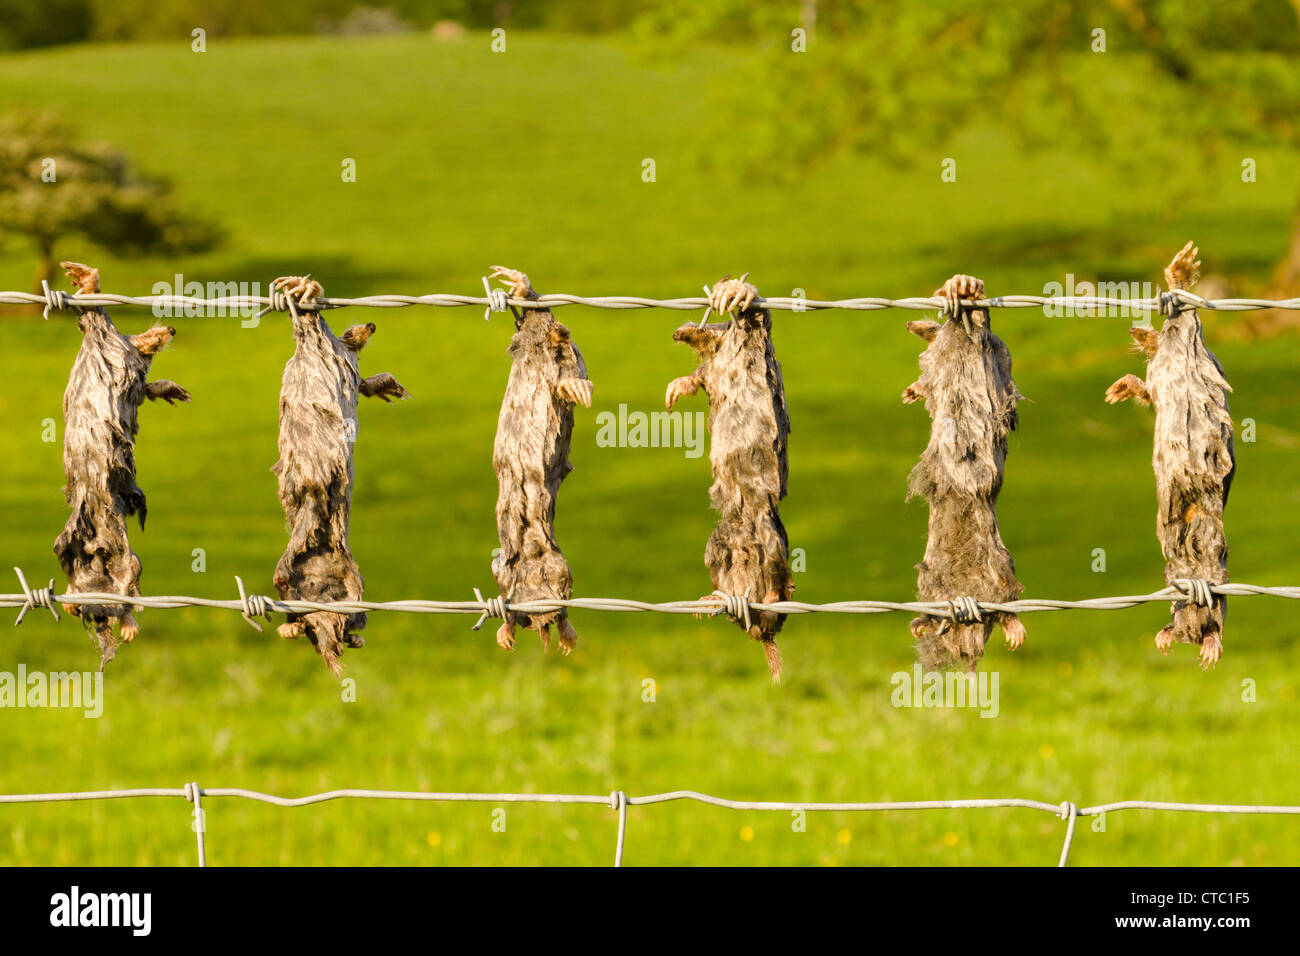 Los topos muertos encadenan en alambre de púas Foto de stock